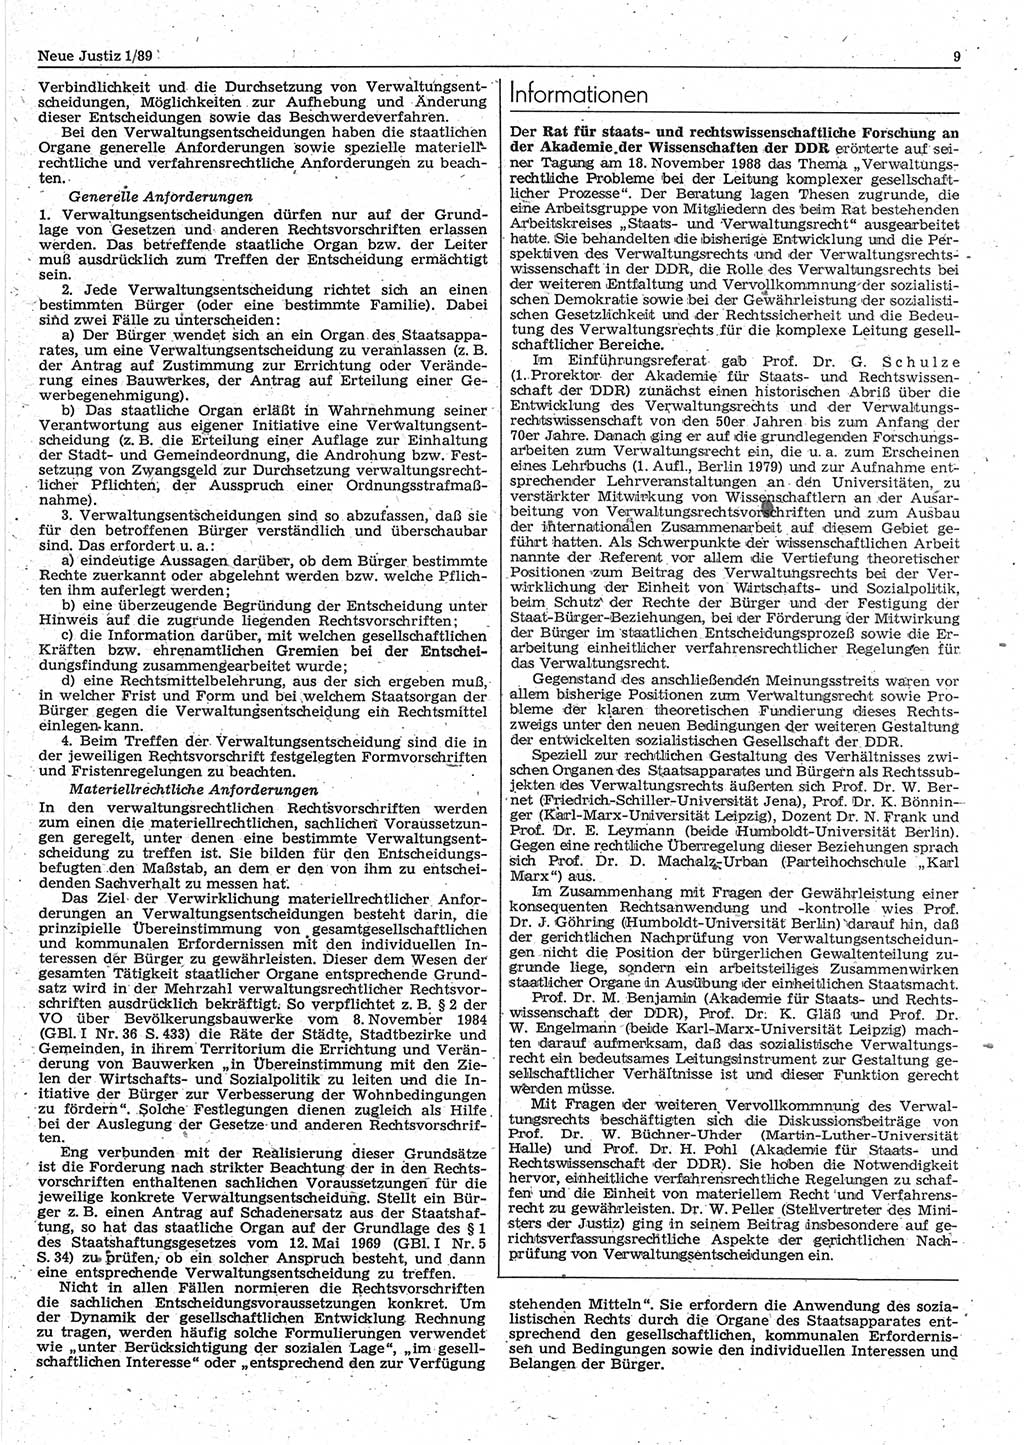 Neue Justiz (NJ), Zeitschrift für sozialistisches Recht und Gesetzlichkeit [Deutsche Demokratische Republik (DDR)], 43. Jahrgang 1989, Seite 9 (NJ DDR 1989, S. 9)